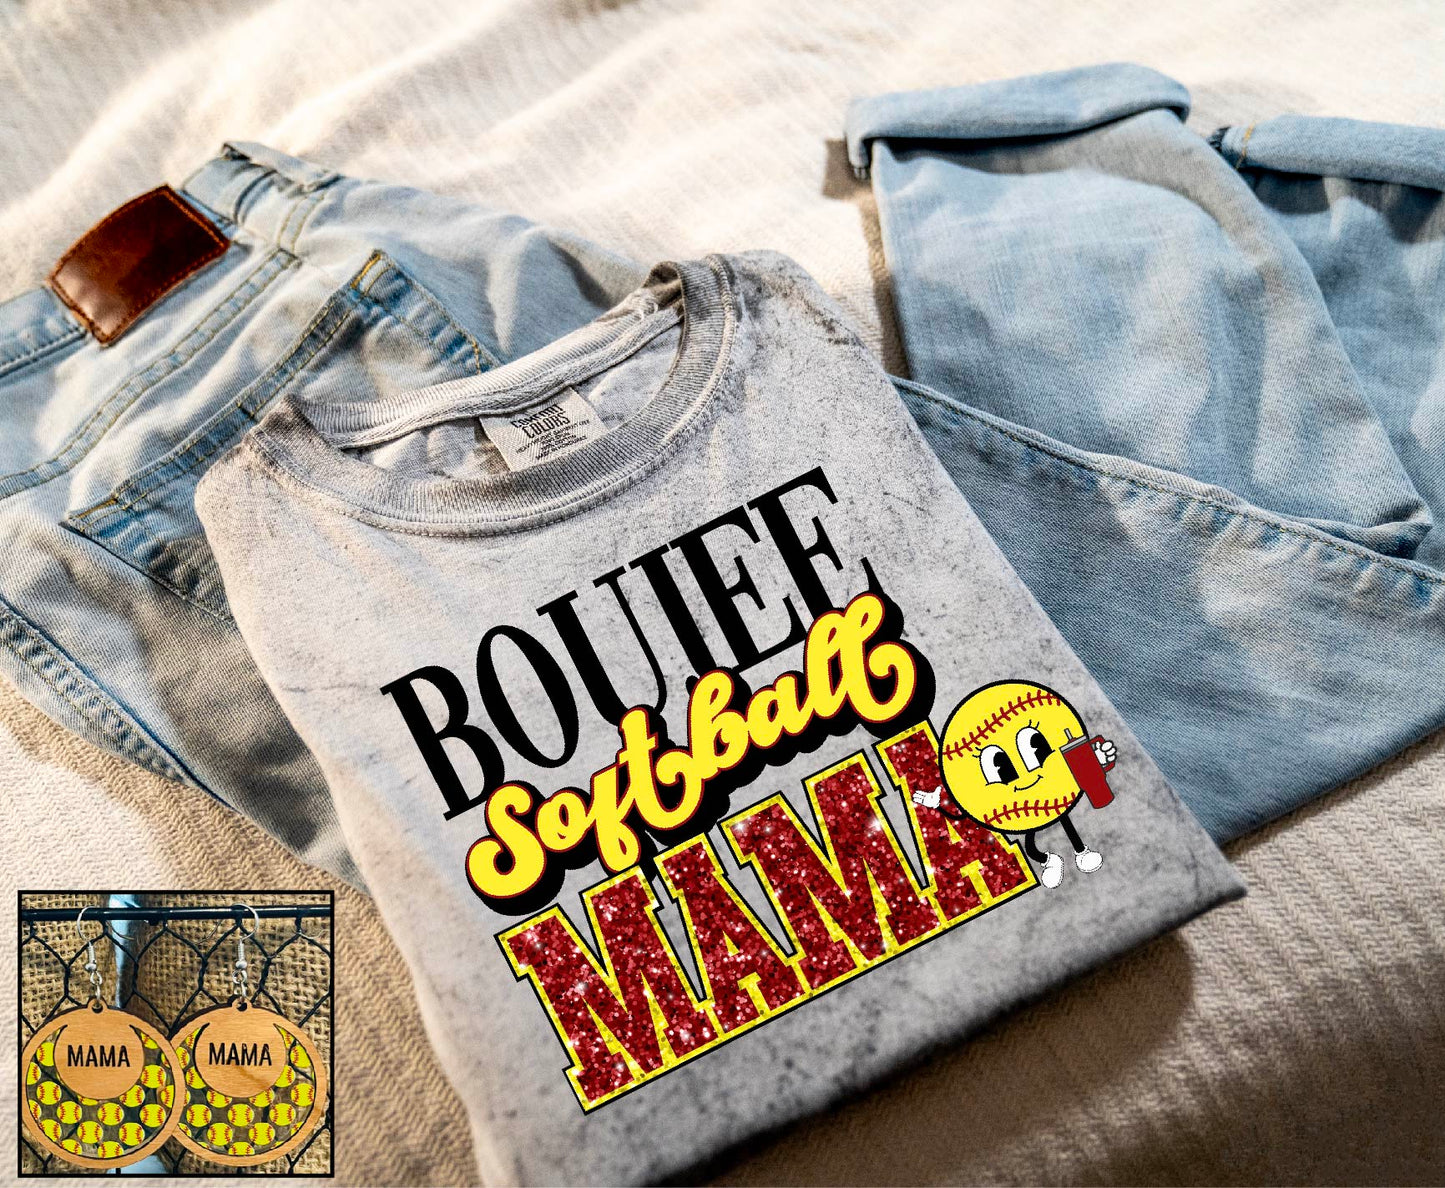 Boujee Softball Mama